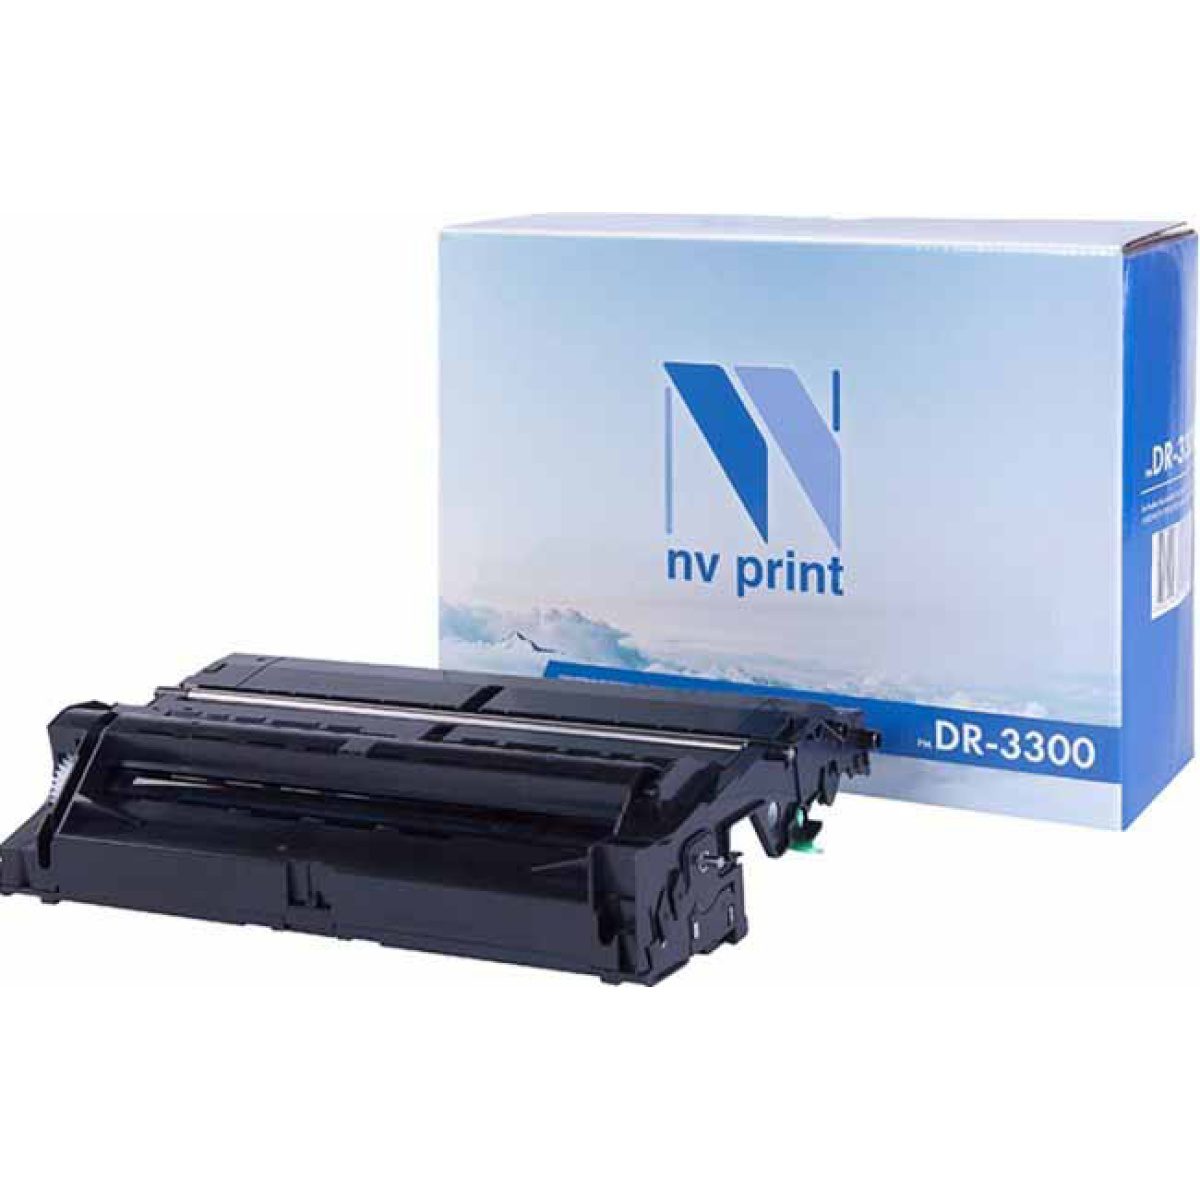 Купить фотобарабан NV Print DR-3300 черный по адекватной цене — Digit-Mall